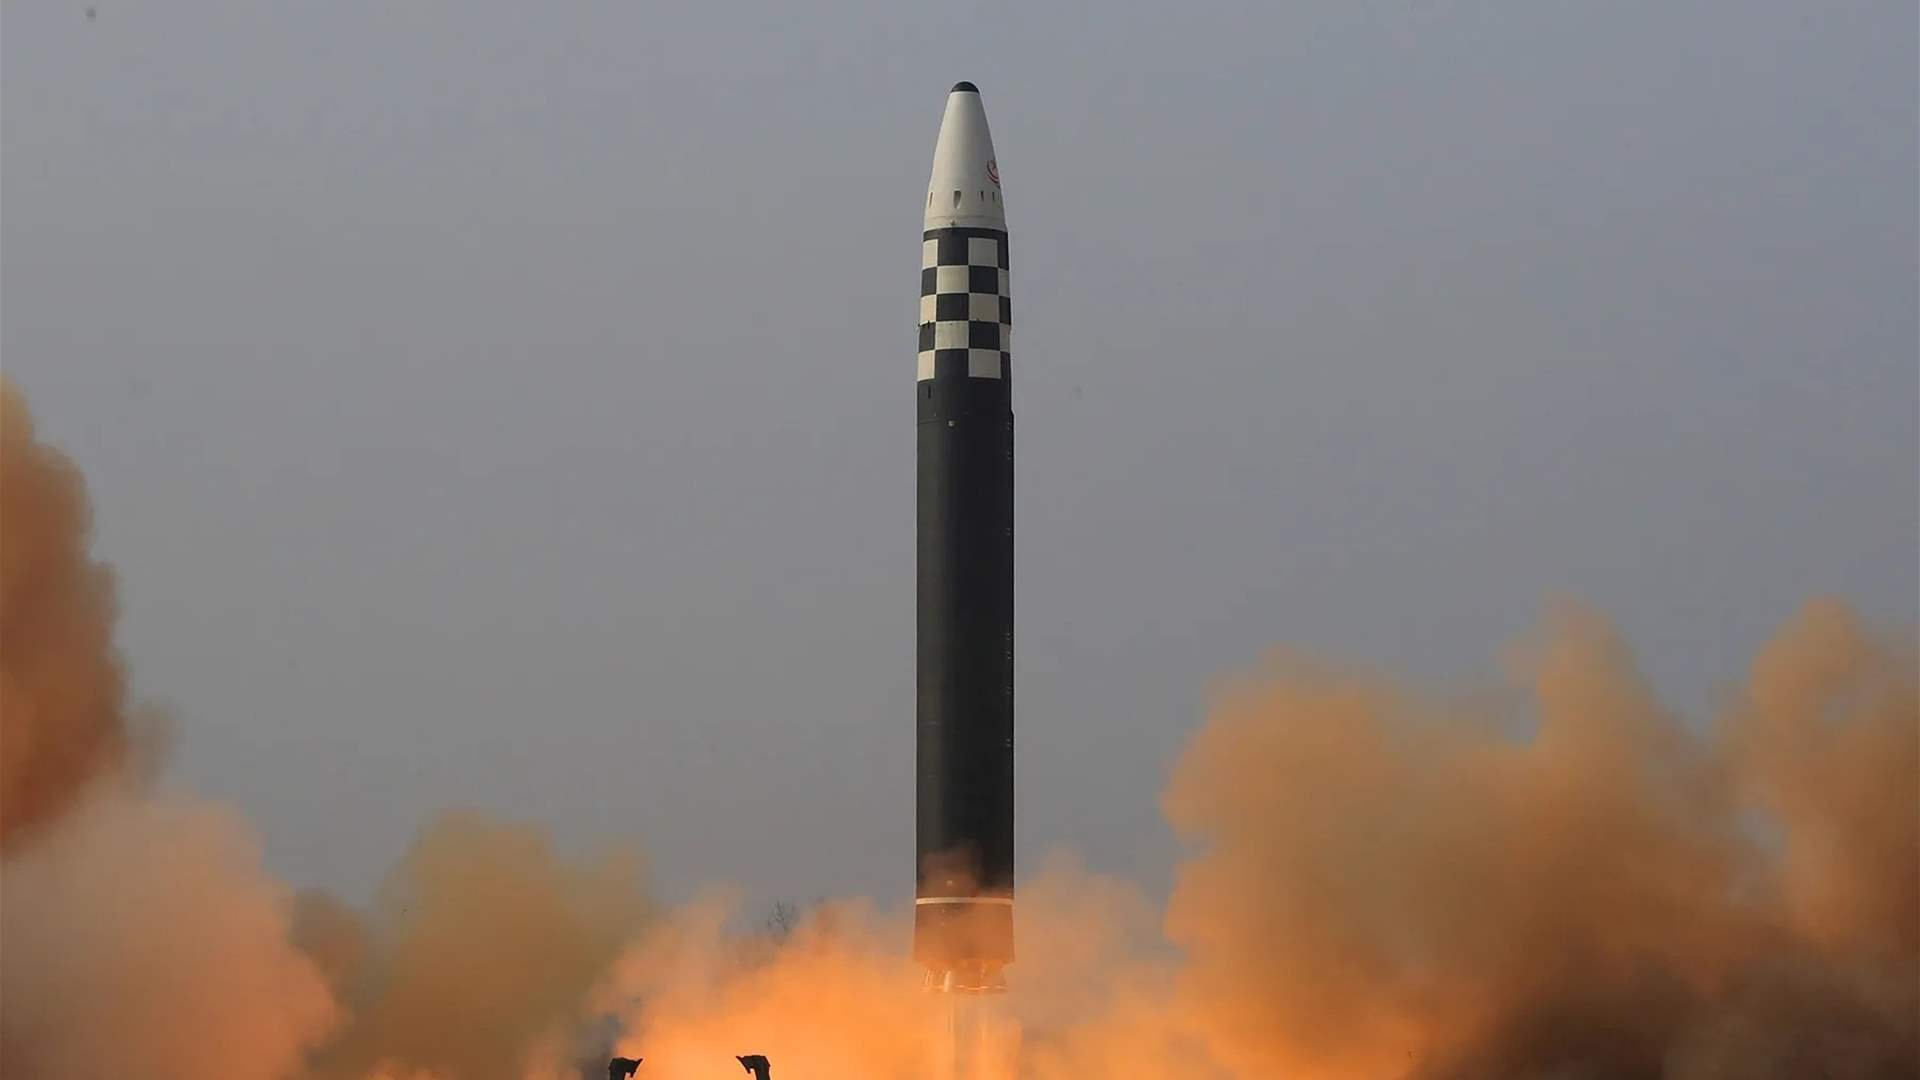 كوريا الشمالية تعلن تجربة صاروخ باليستي جديد يحمل رأسا حربيا ضخما